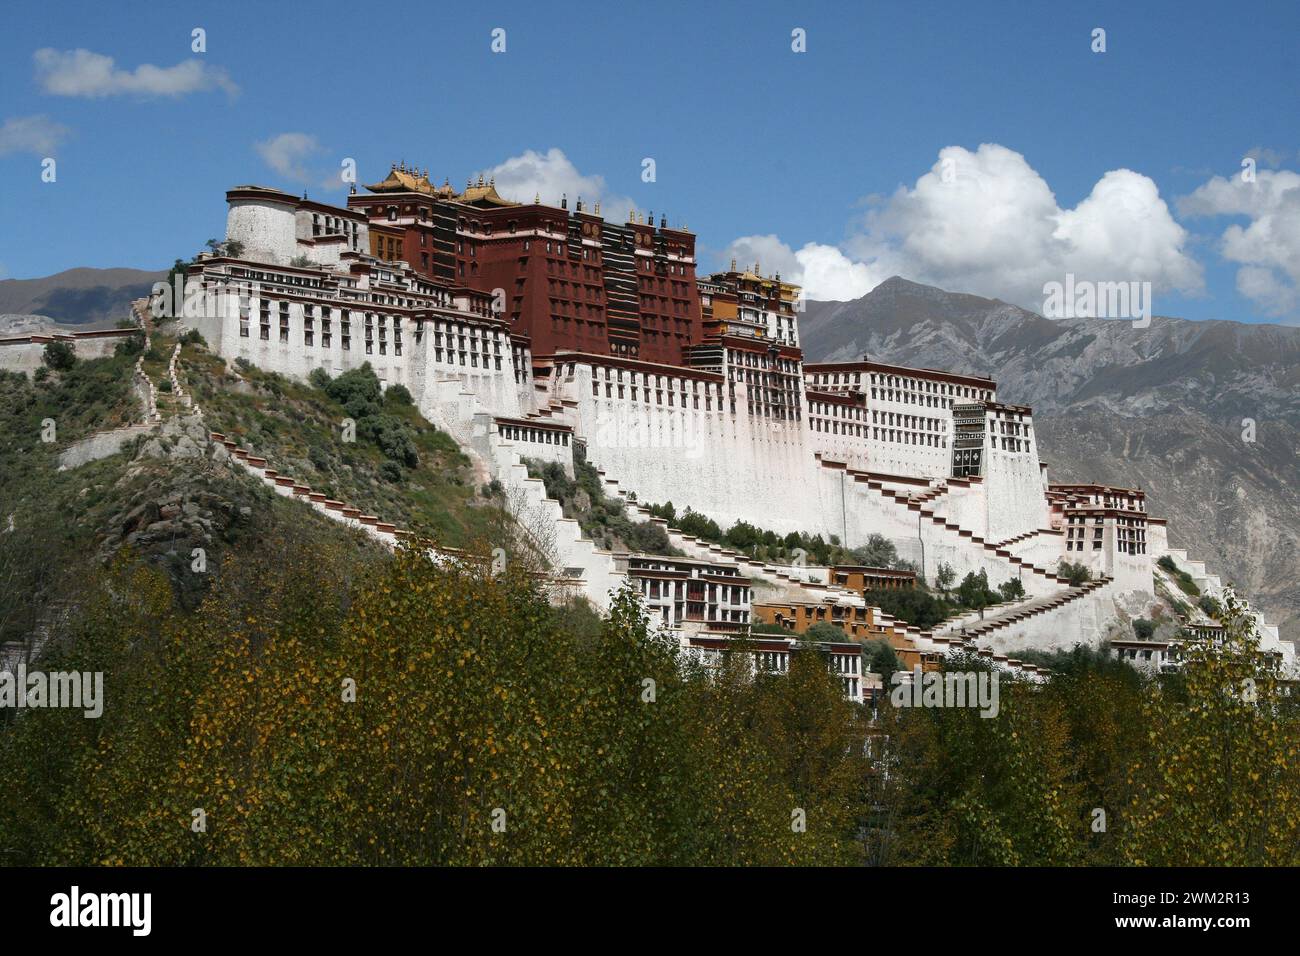 Der Potala-Palast ist eine Dzong-Festung in Lhasa, der Hauptstadt der Autonomen Region Tibet in China und war der Winterpalast der Dalai Lamas. Stockfoto